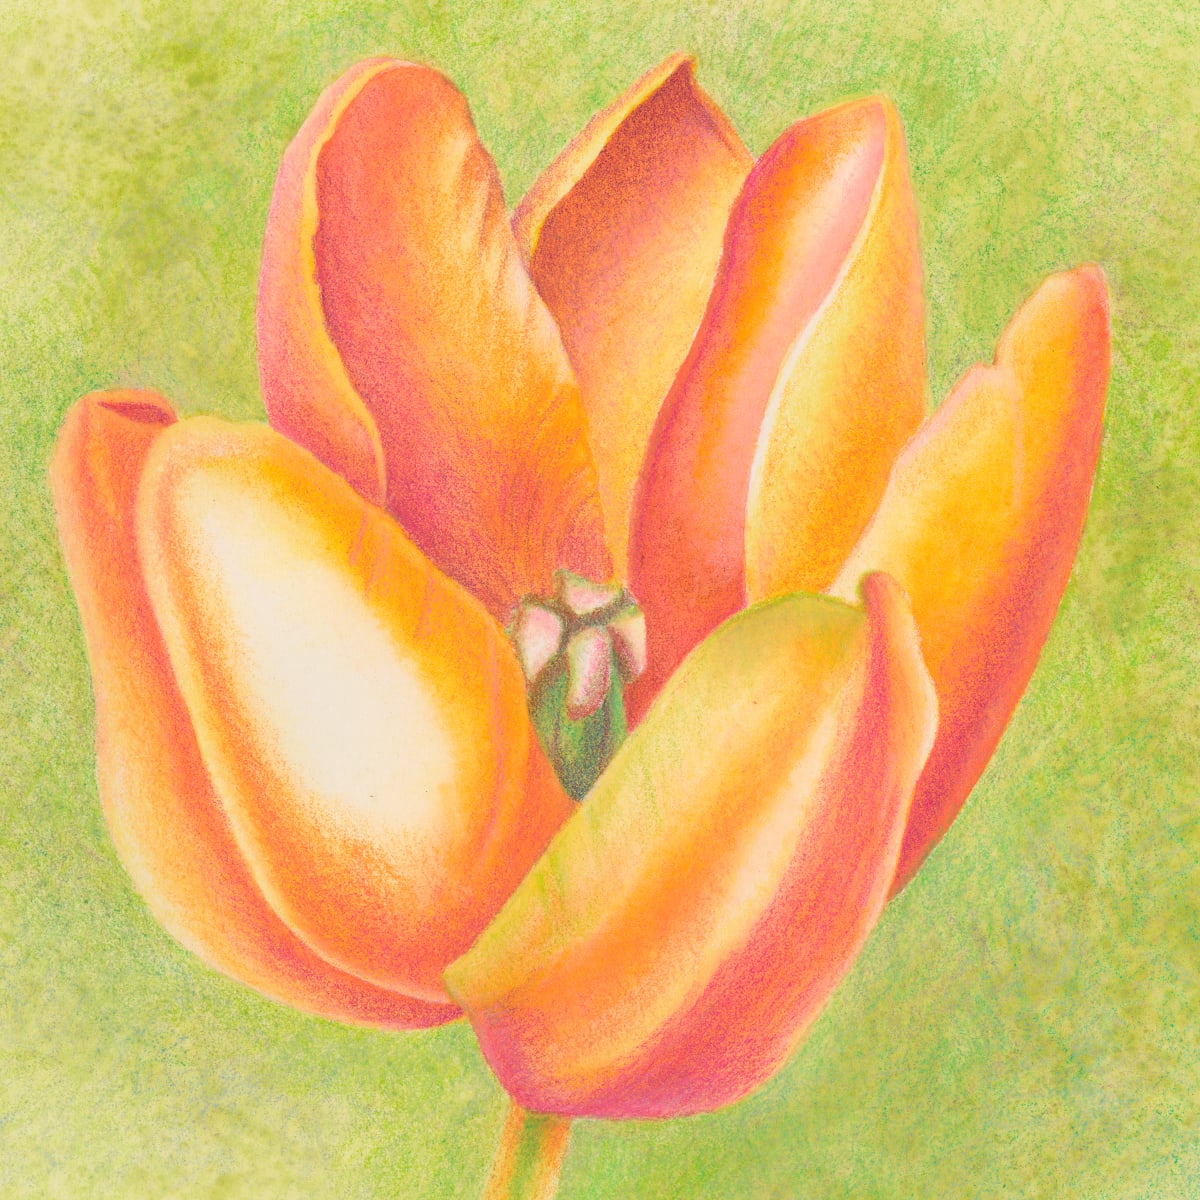 Small Wonders - Orange Tulip Series #3 by Mary Ahern 